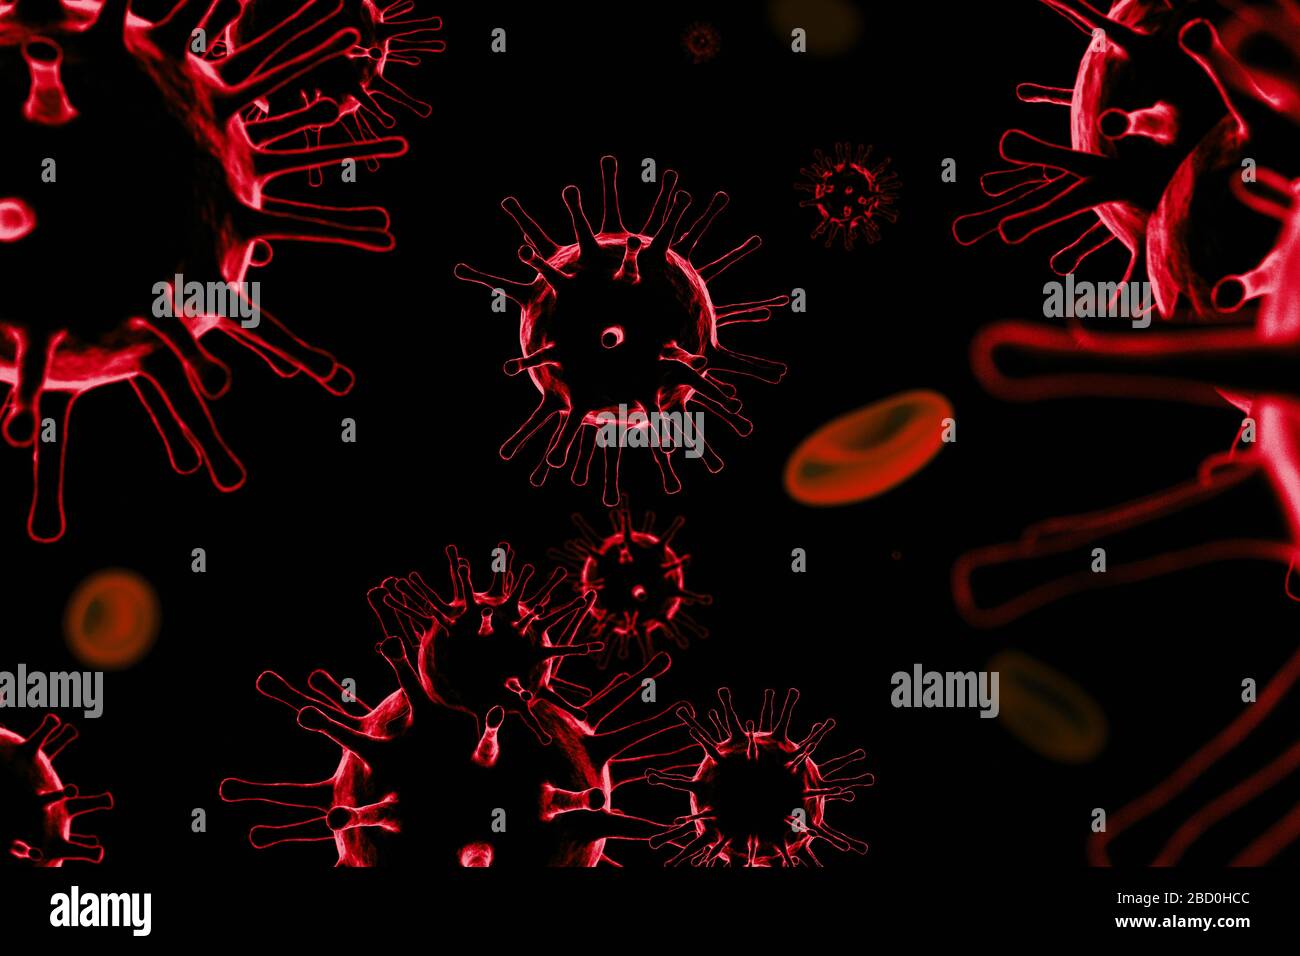 3D illustration of corona virus Stock Photo